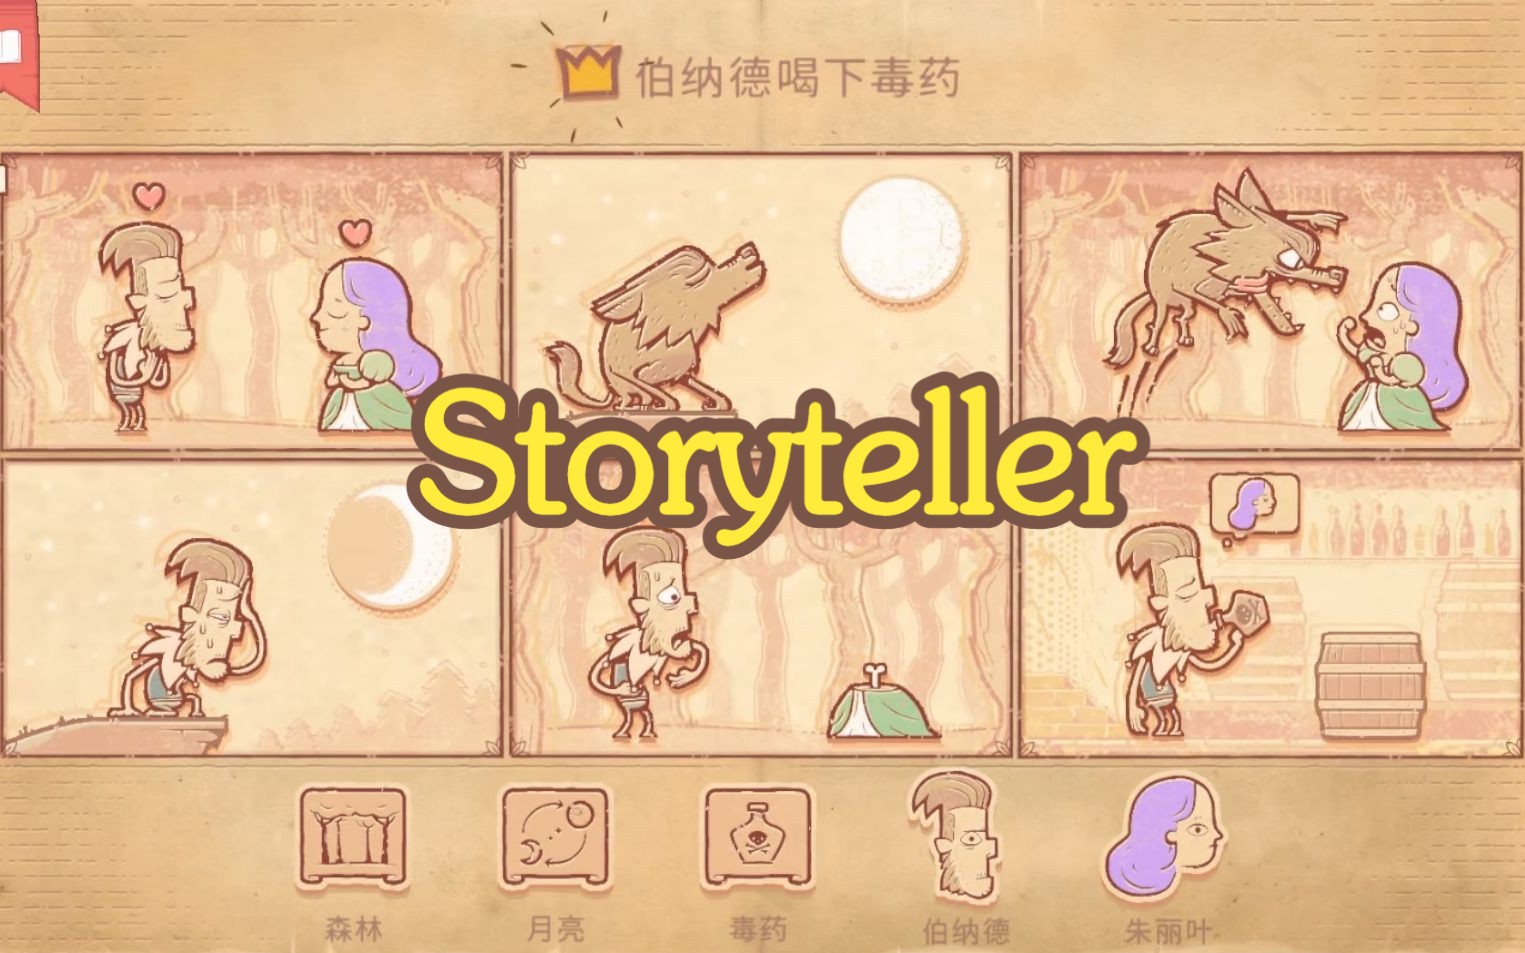 【谜之声实况】Storyteller 说书人/述事者 100%完成度通关~